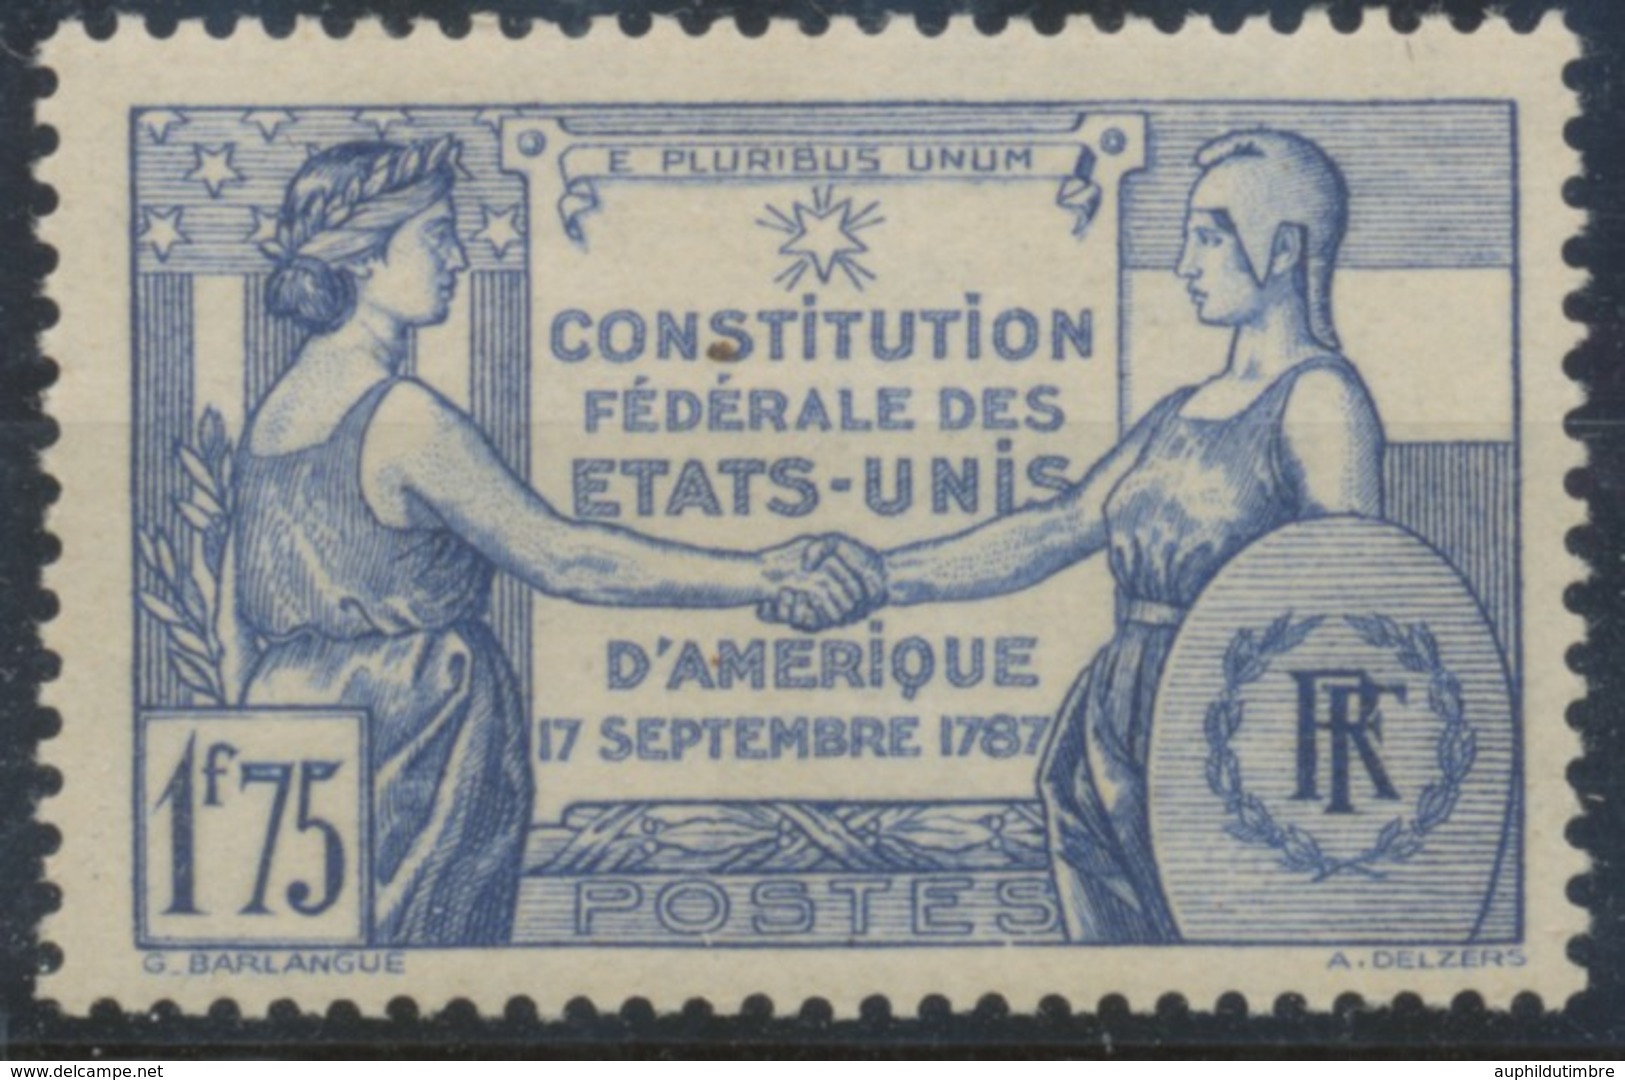 Sesquicentenaire De La Constitution Des Etats-Unis. 1f.75 Outremer Neuf Luxe ** Y357 - Unused Stamps